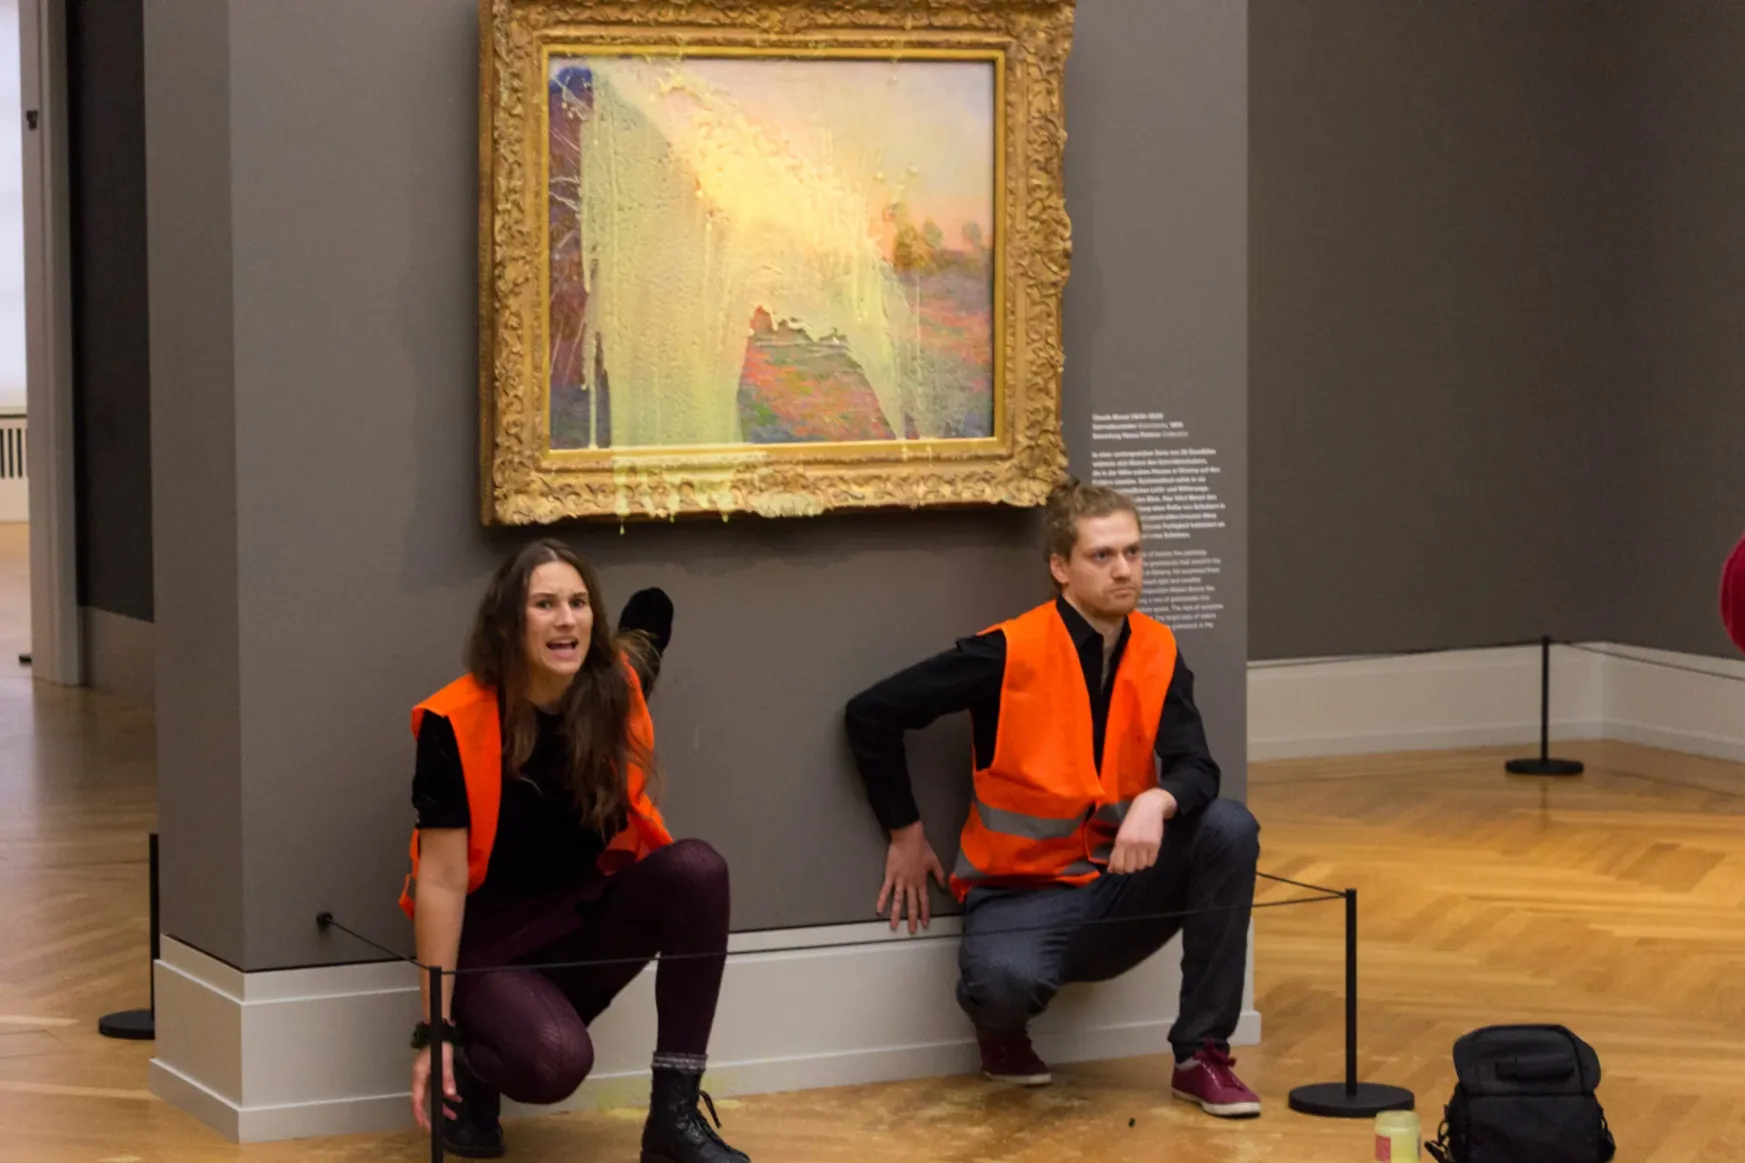 Klímaaktivisták most Monet egyik festményét öntötték le, üveglap védte meg a krumplipürétől